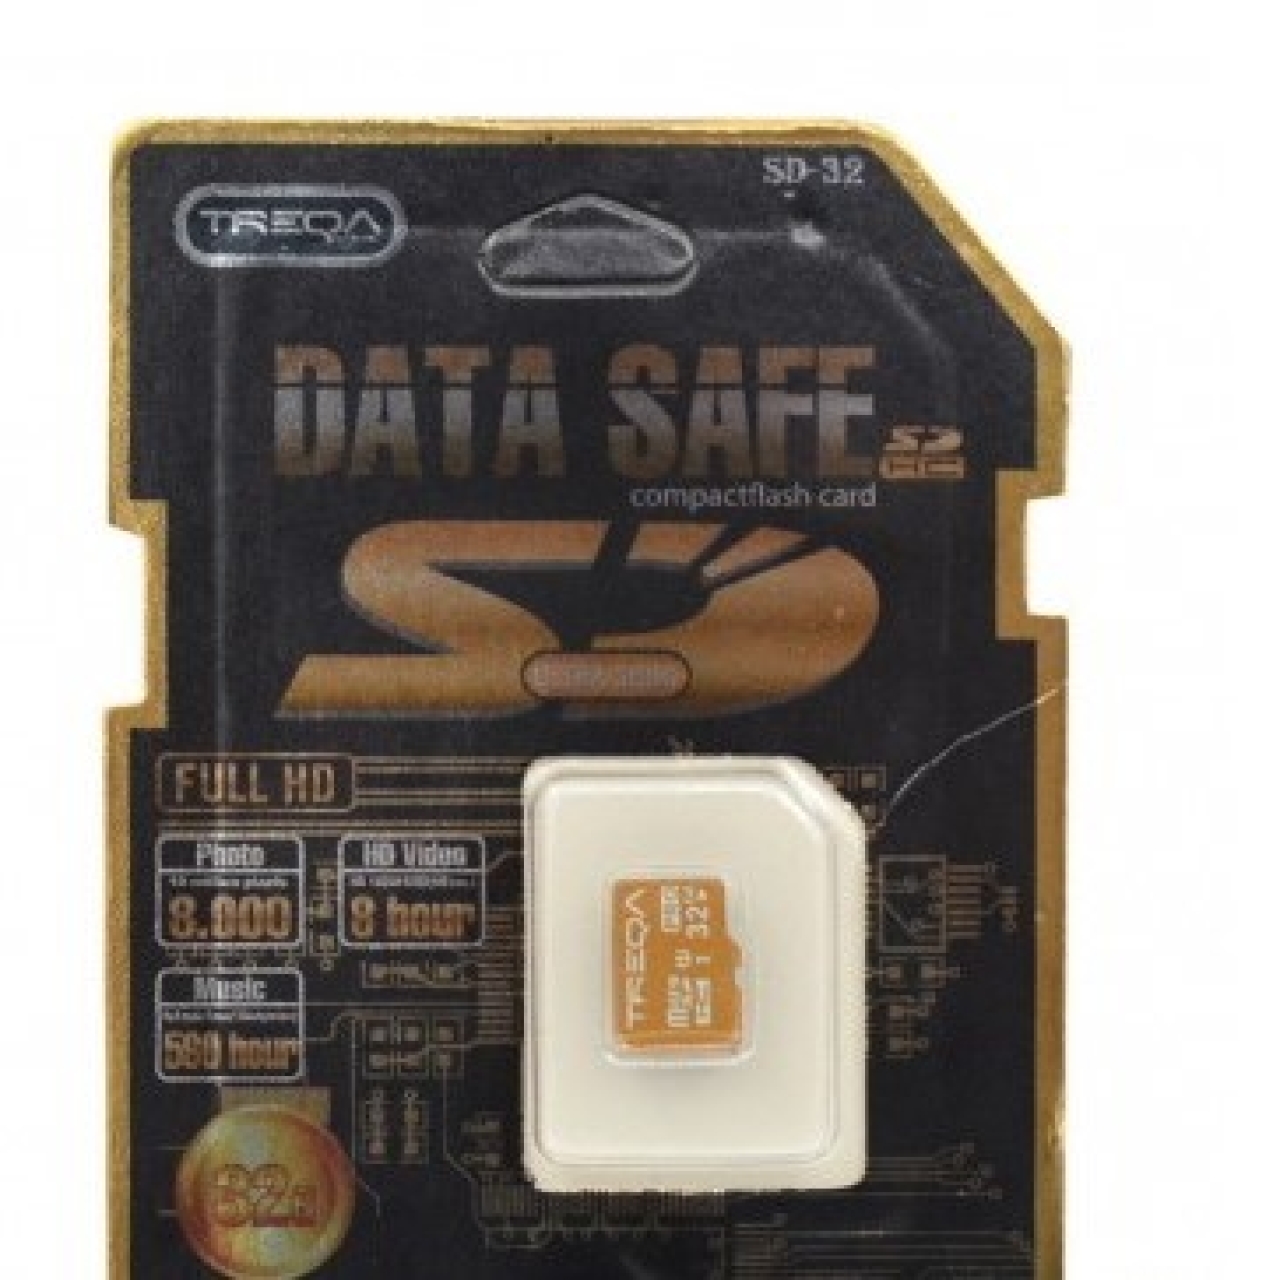 کارت حافظه microSDHC ترکا مدل SD-32 ظرفیت 32 گیگابایت